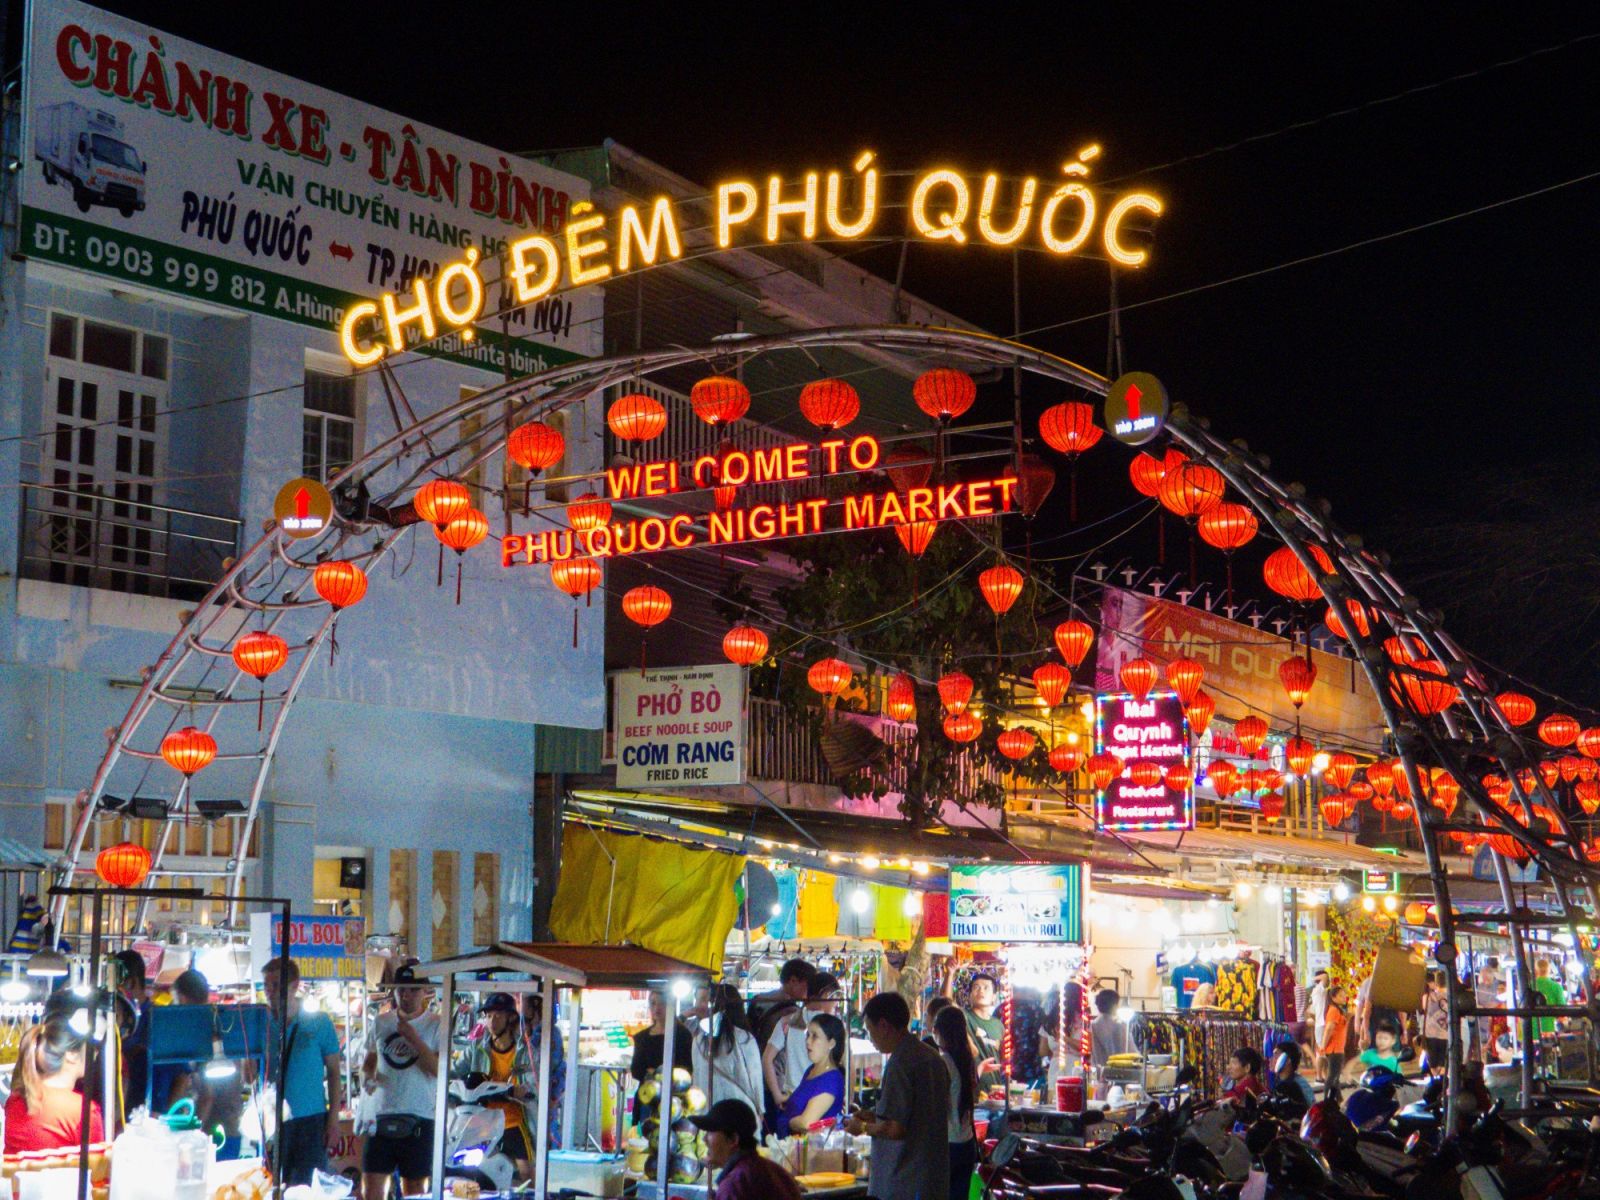 Chợ đêm Phú Quốc cũng nằm trong địa điểm yêu thích của khách quốc tế